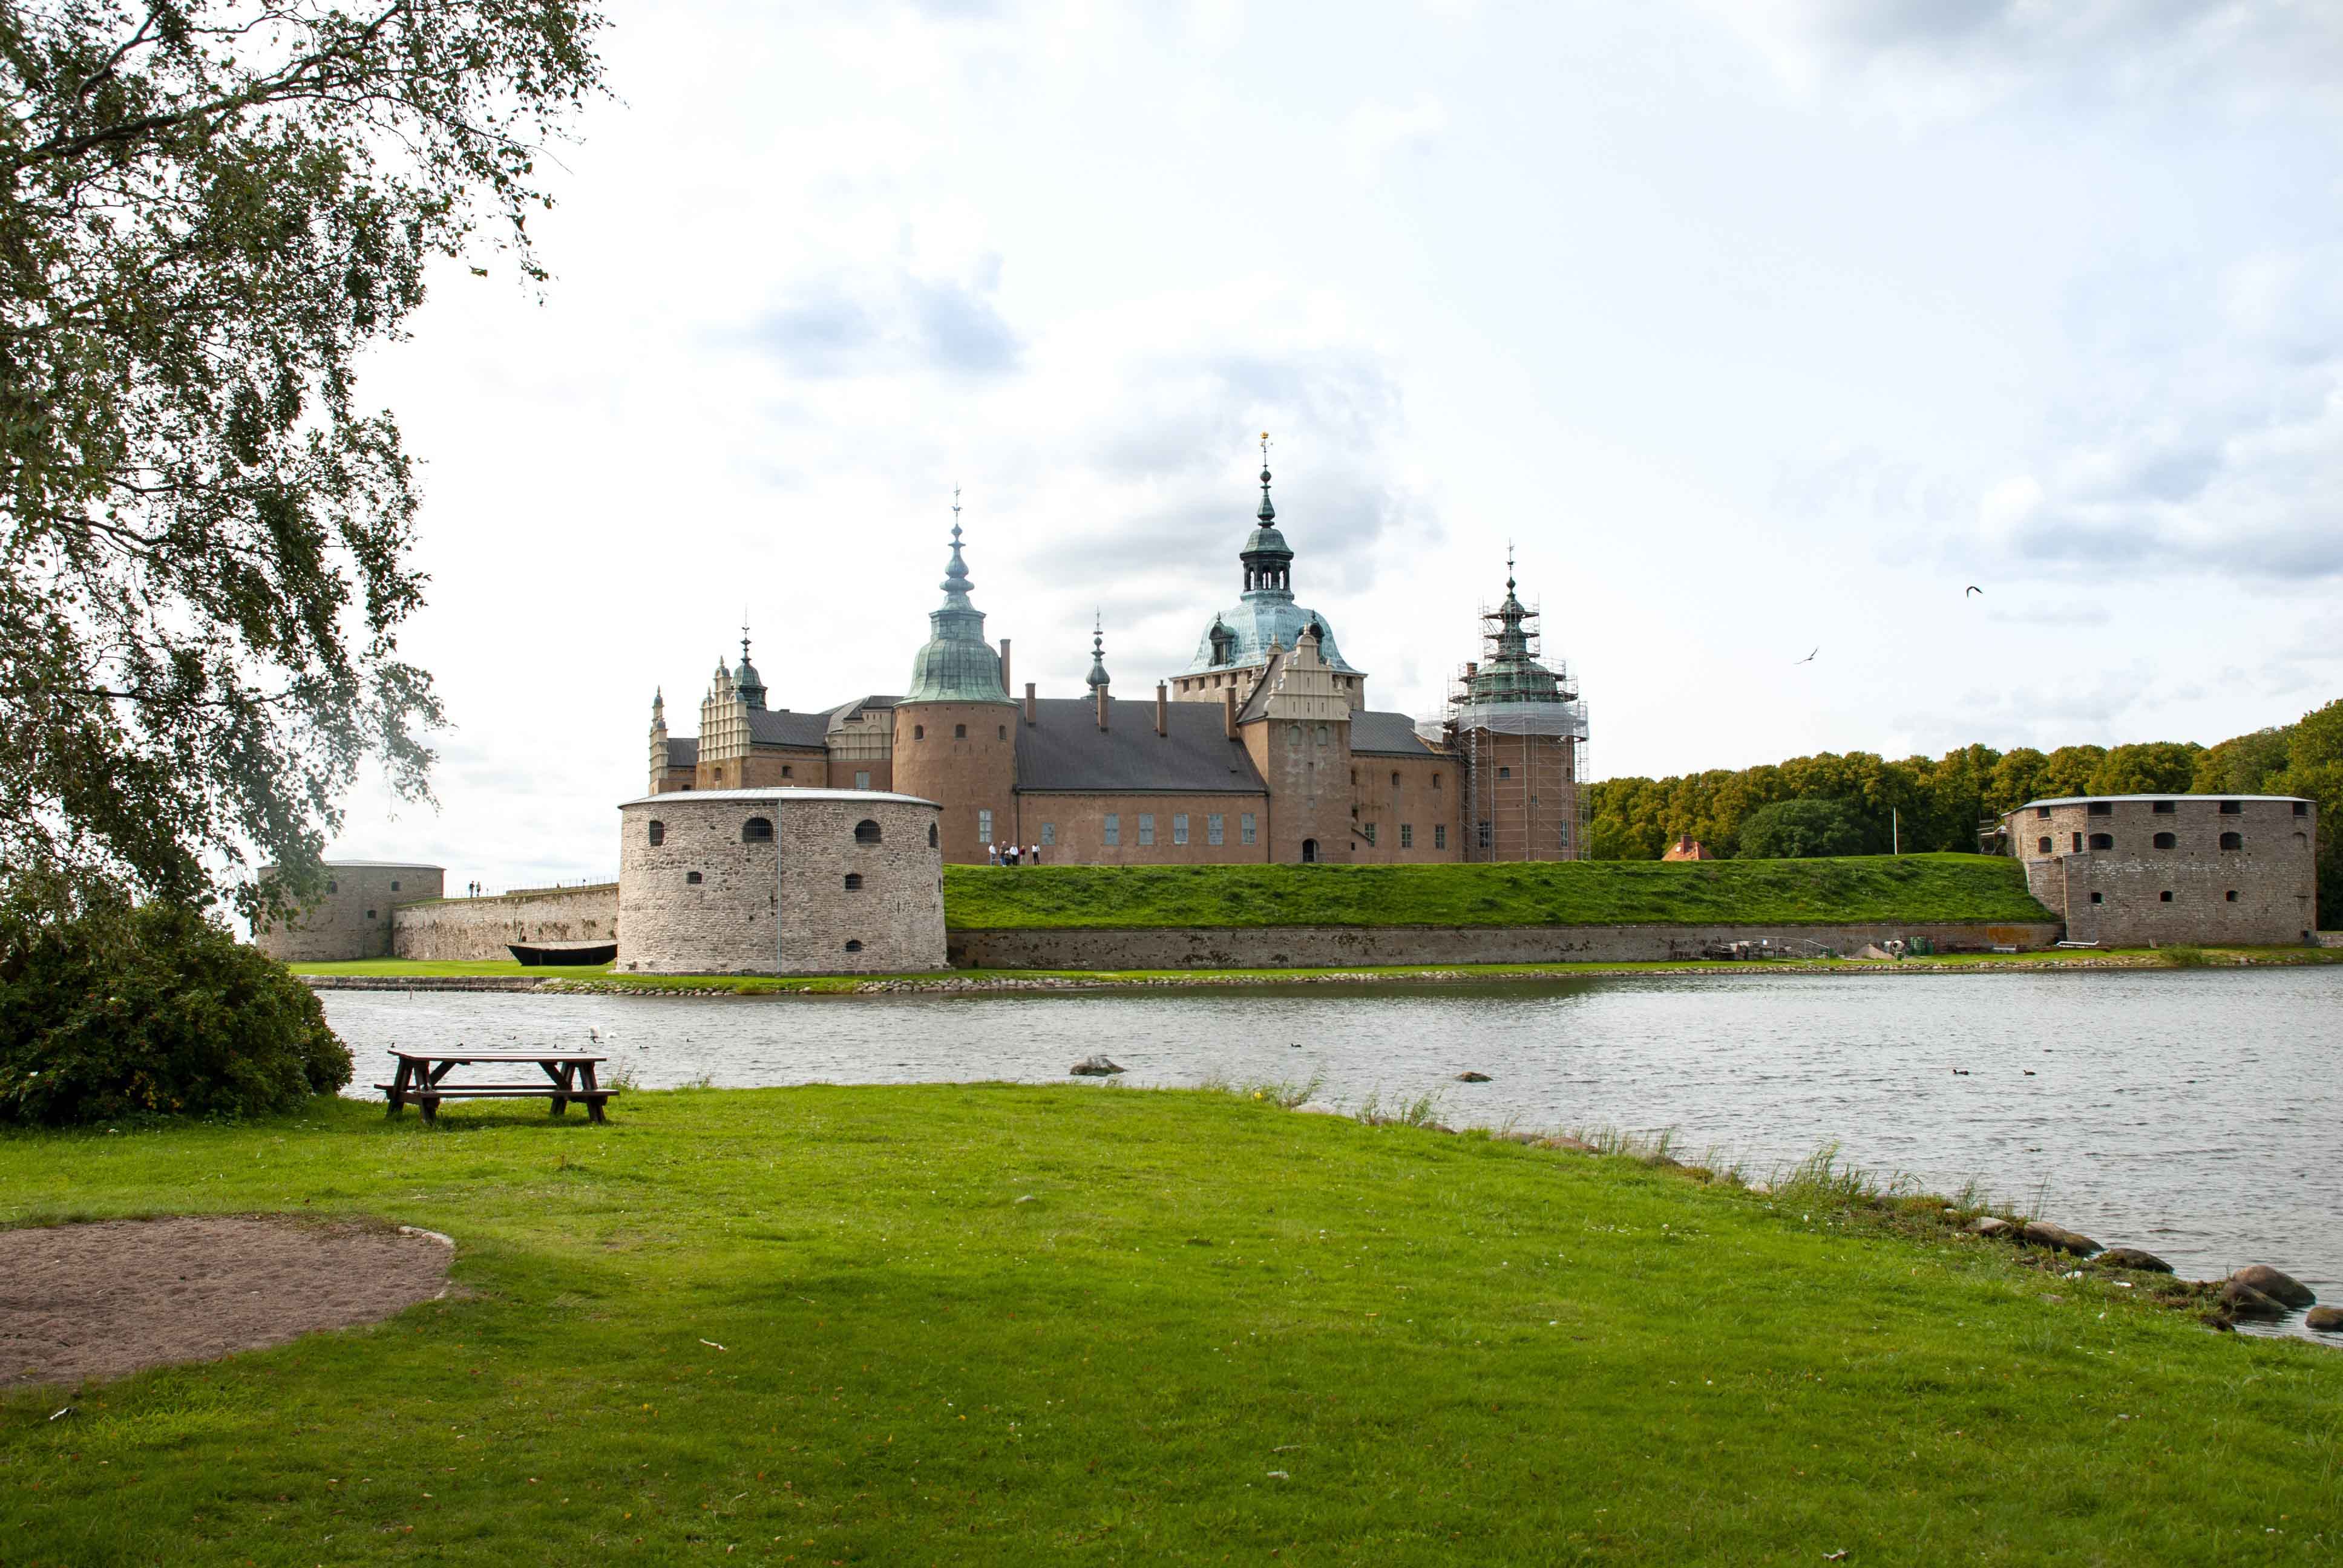 Kalmar Castle in Kalmar, Sweden.